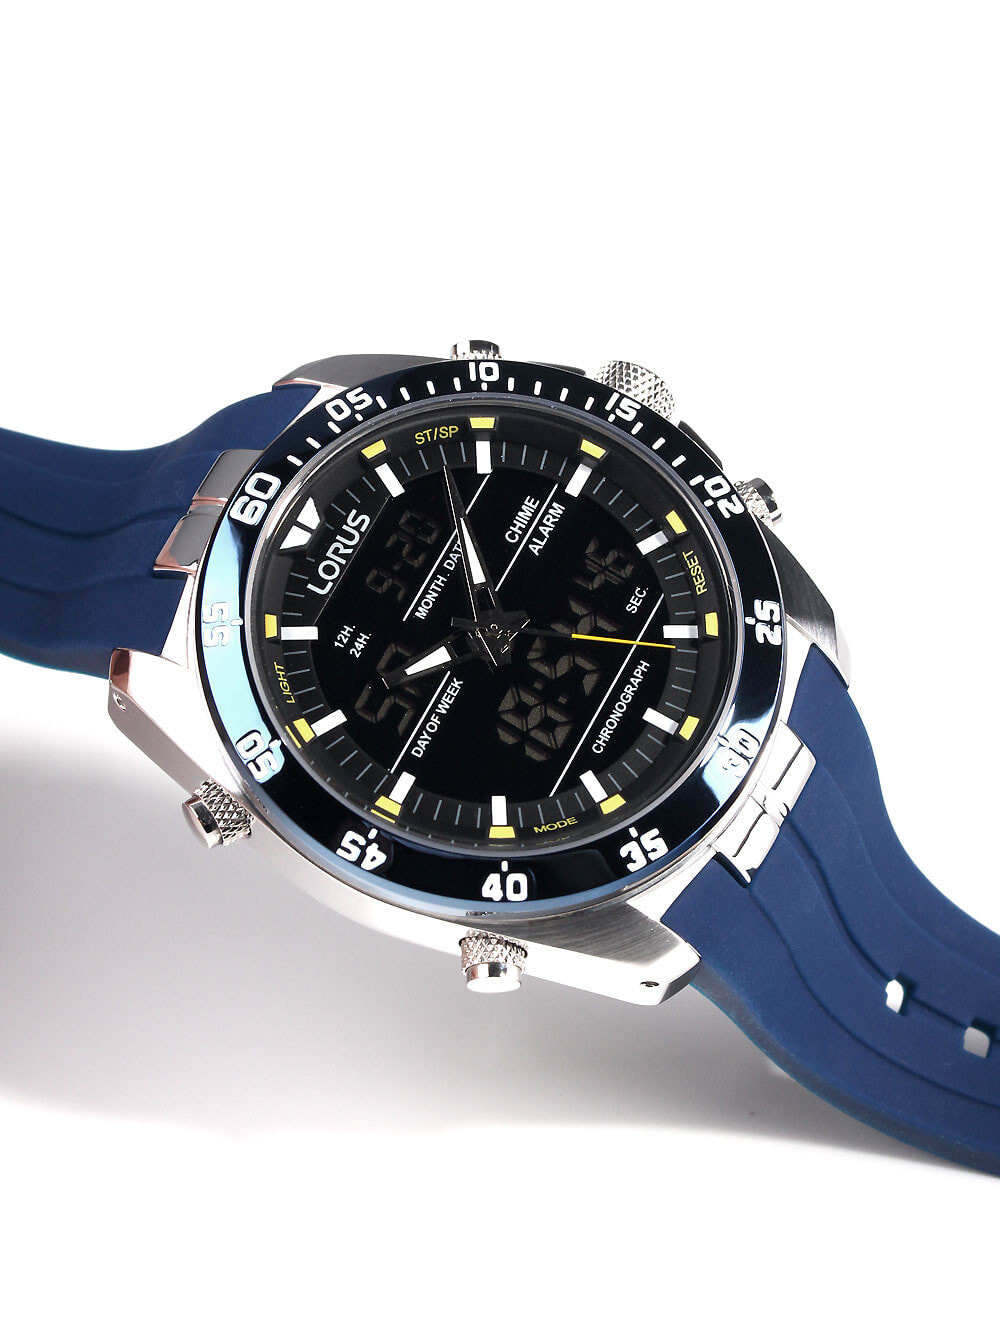 46mm ремешком 100M Lorus Analog-Digital купить Alarm доставкой, часы недорого силиконовым 6761219 наручные с Chronograph RW617AX9 — Мужские с синим